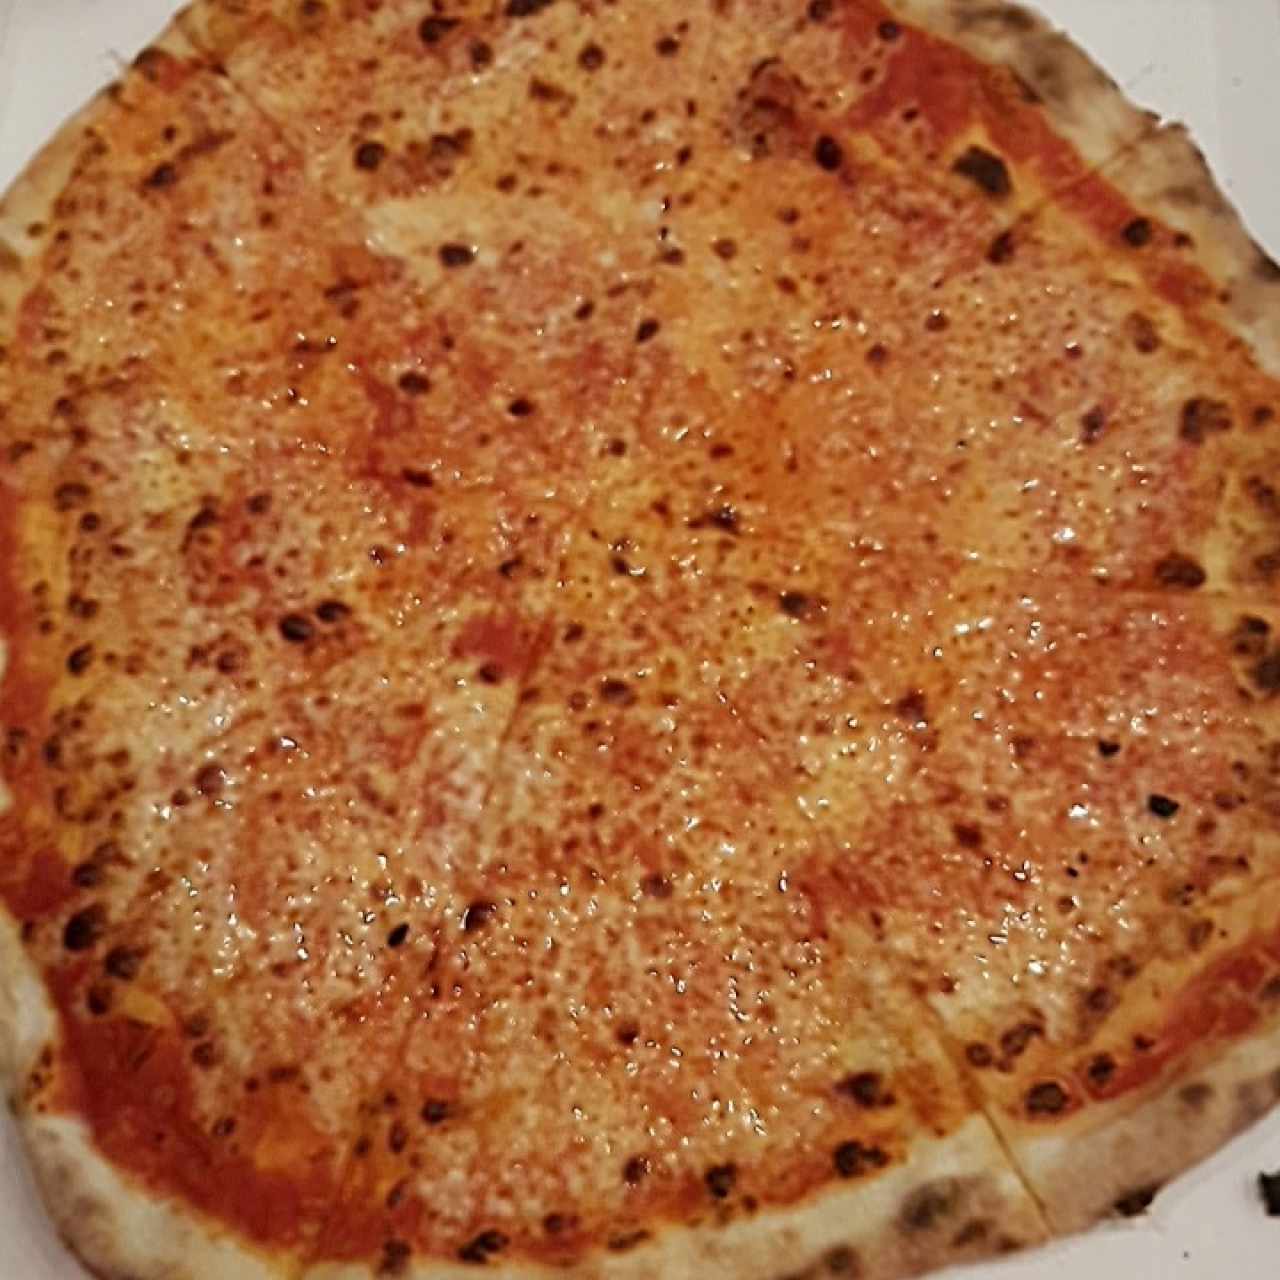 pizza margarita muy rica!